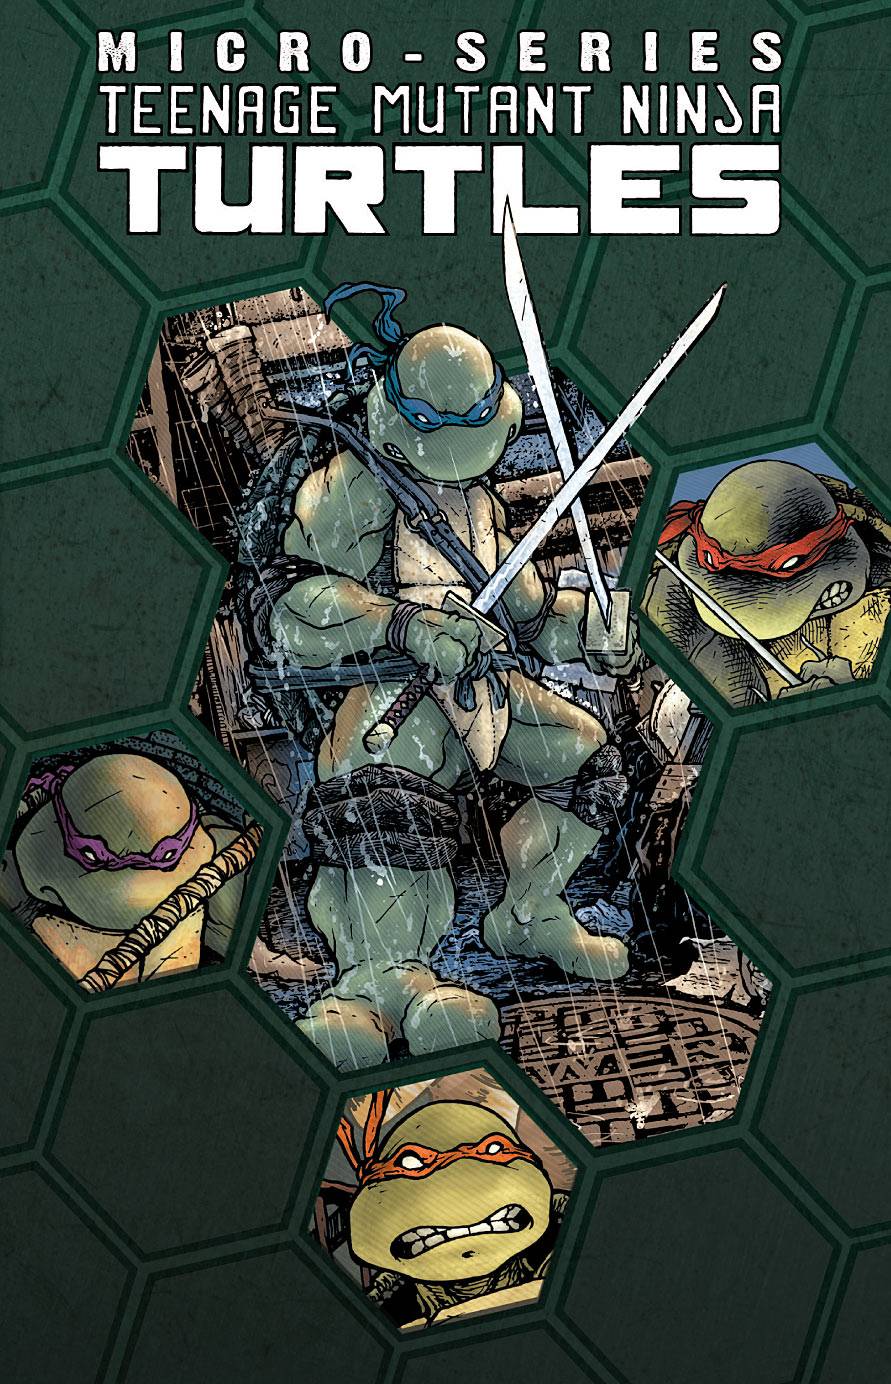 Teenage Mutant Ninja Turtles Micro Series Graphic Novel Volume 1